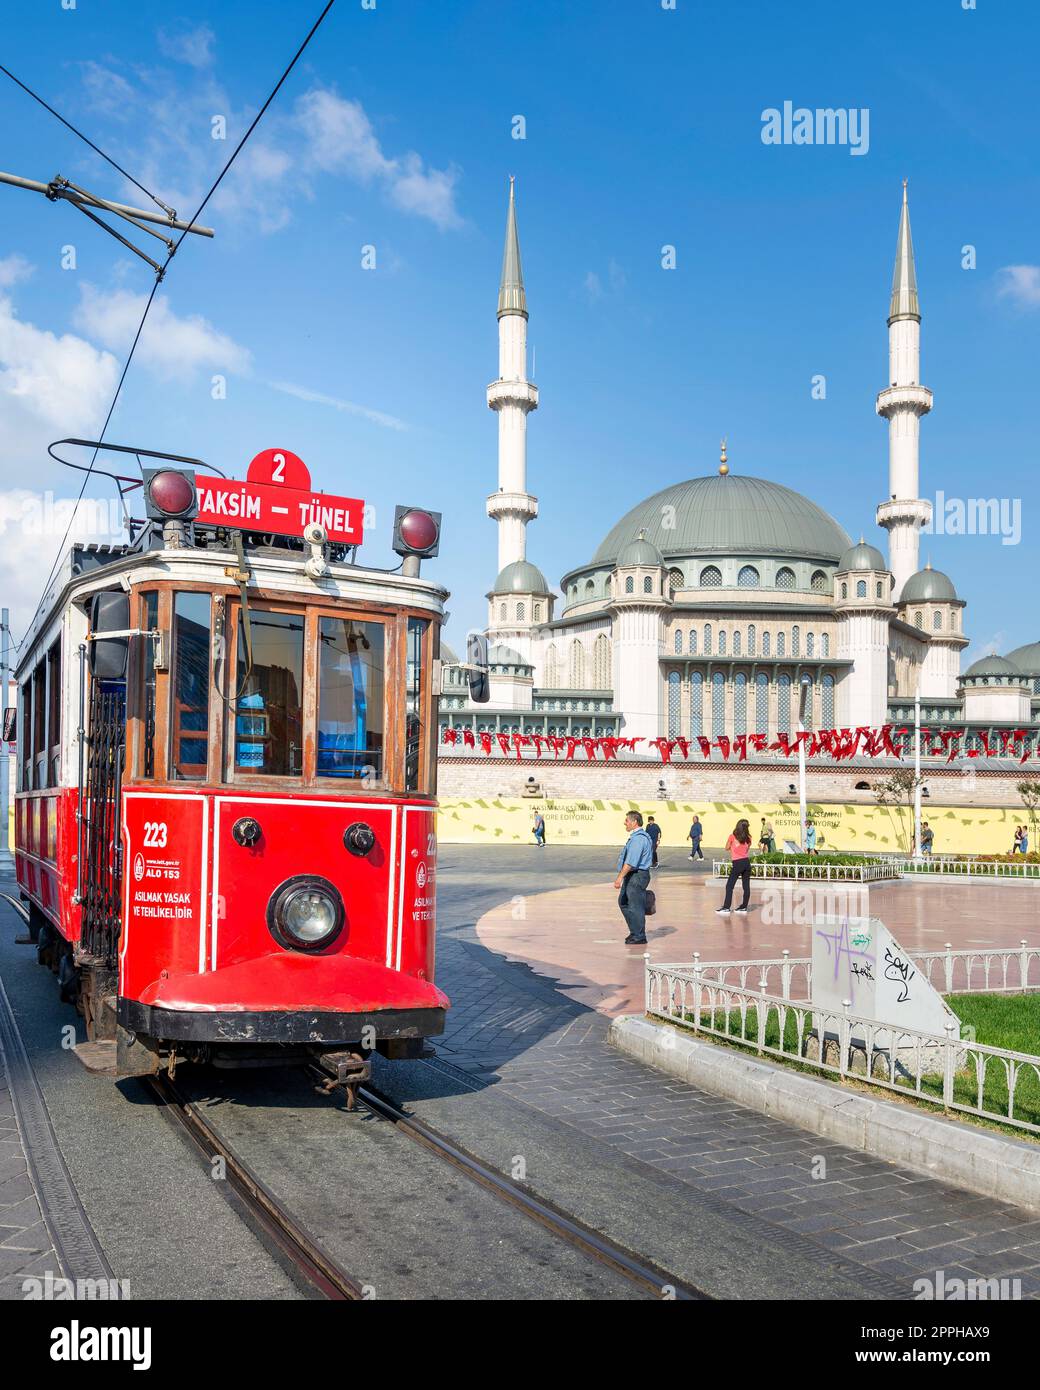 Nostalgique Taksim Tunel Red Tram, ou tramvay, avec la mosquée Taksim en arrière-plan, sur la place Taksim, Istanbul, Turquie Banque D'Images